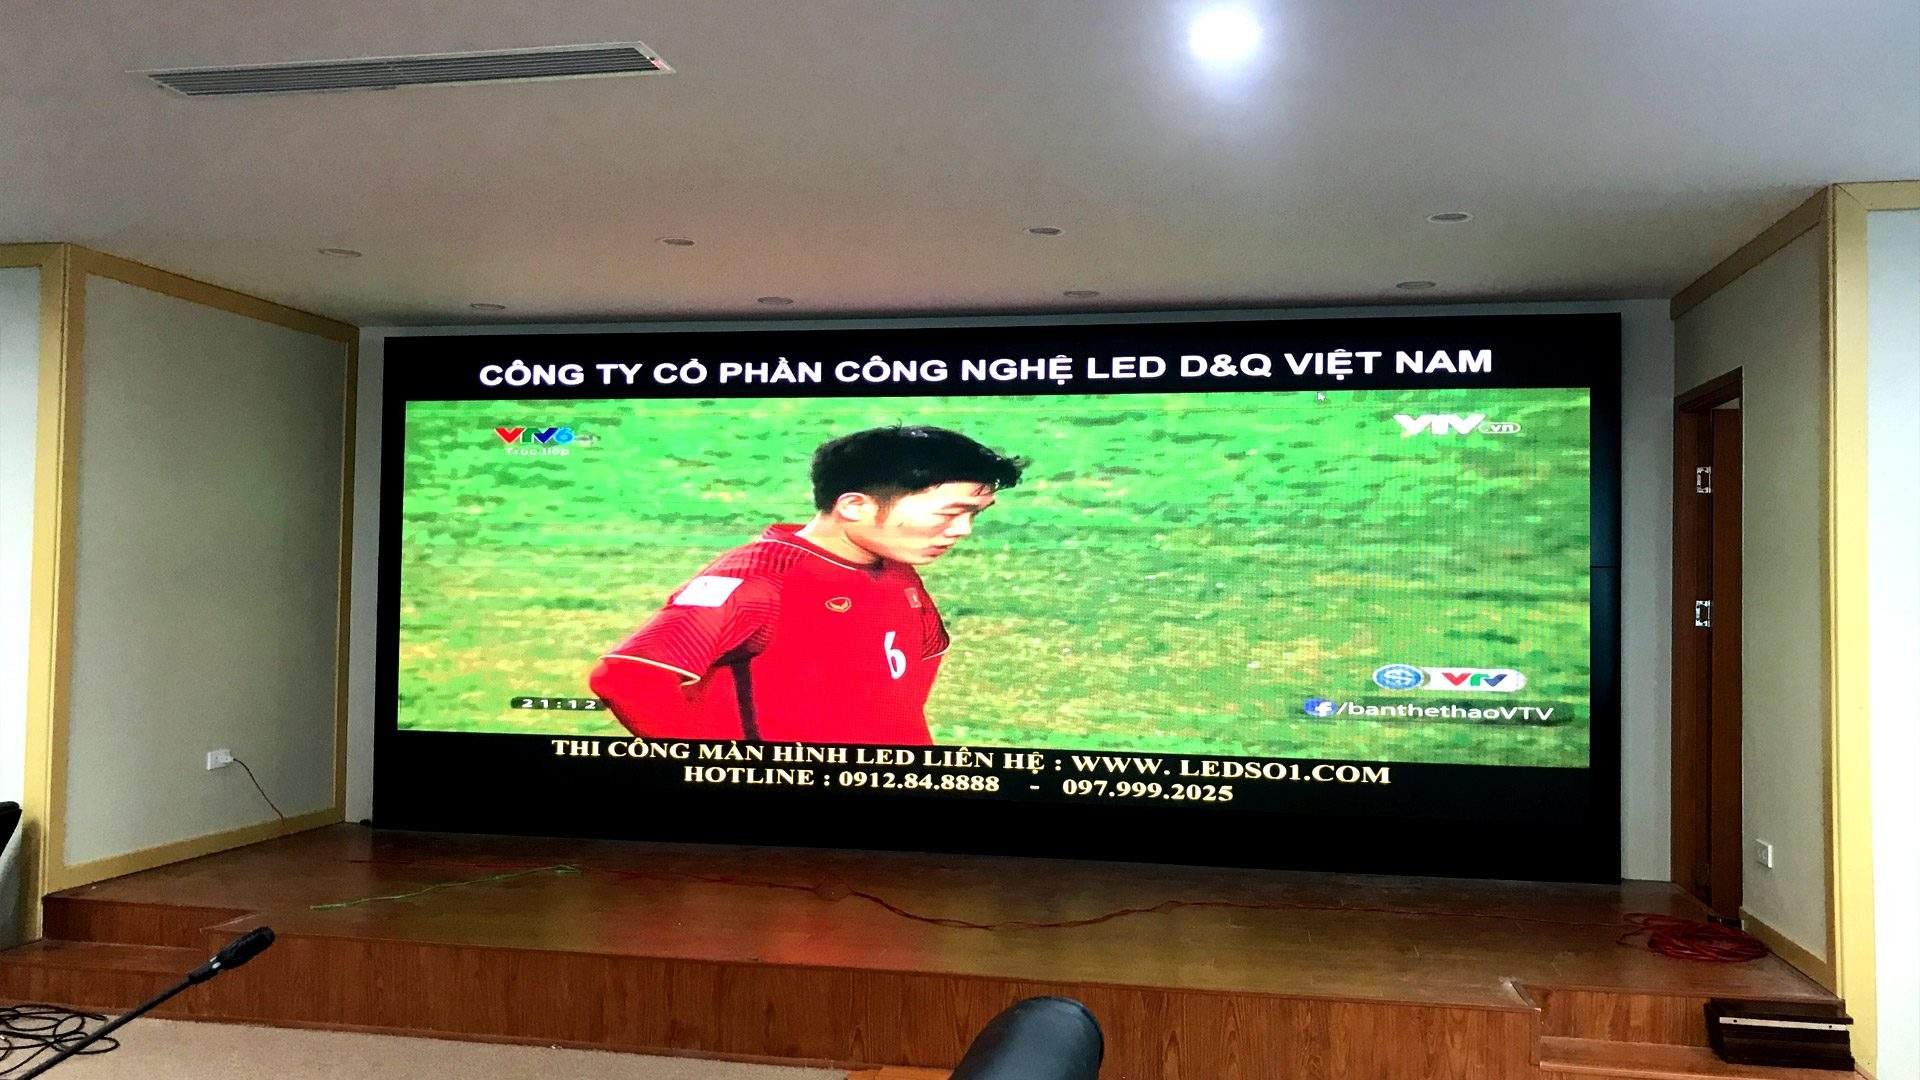 Thi công màn hình led P2.5 tại Biti's Việt Nam  